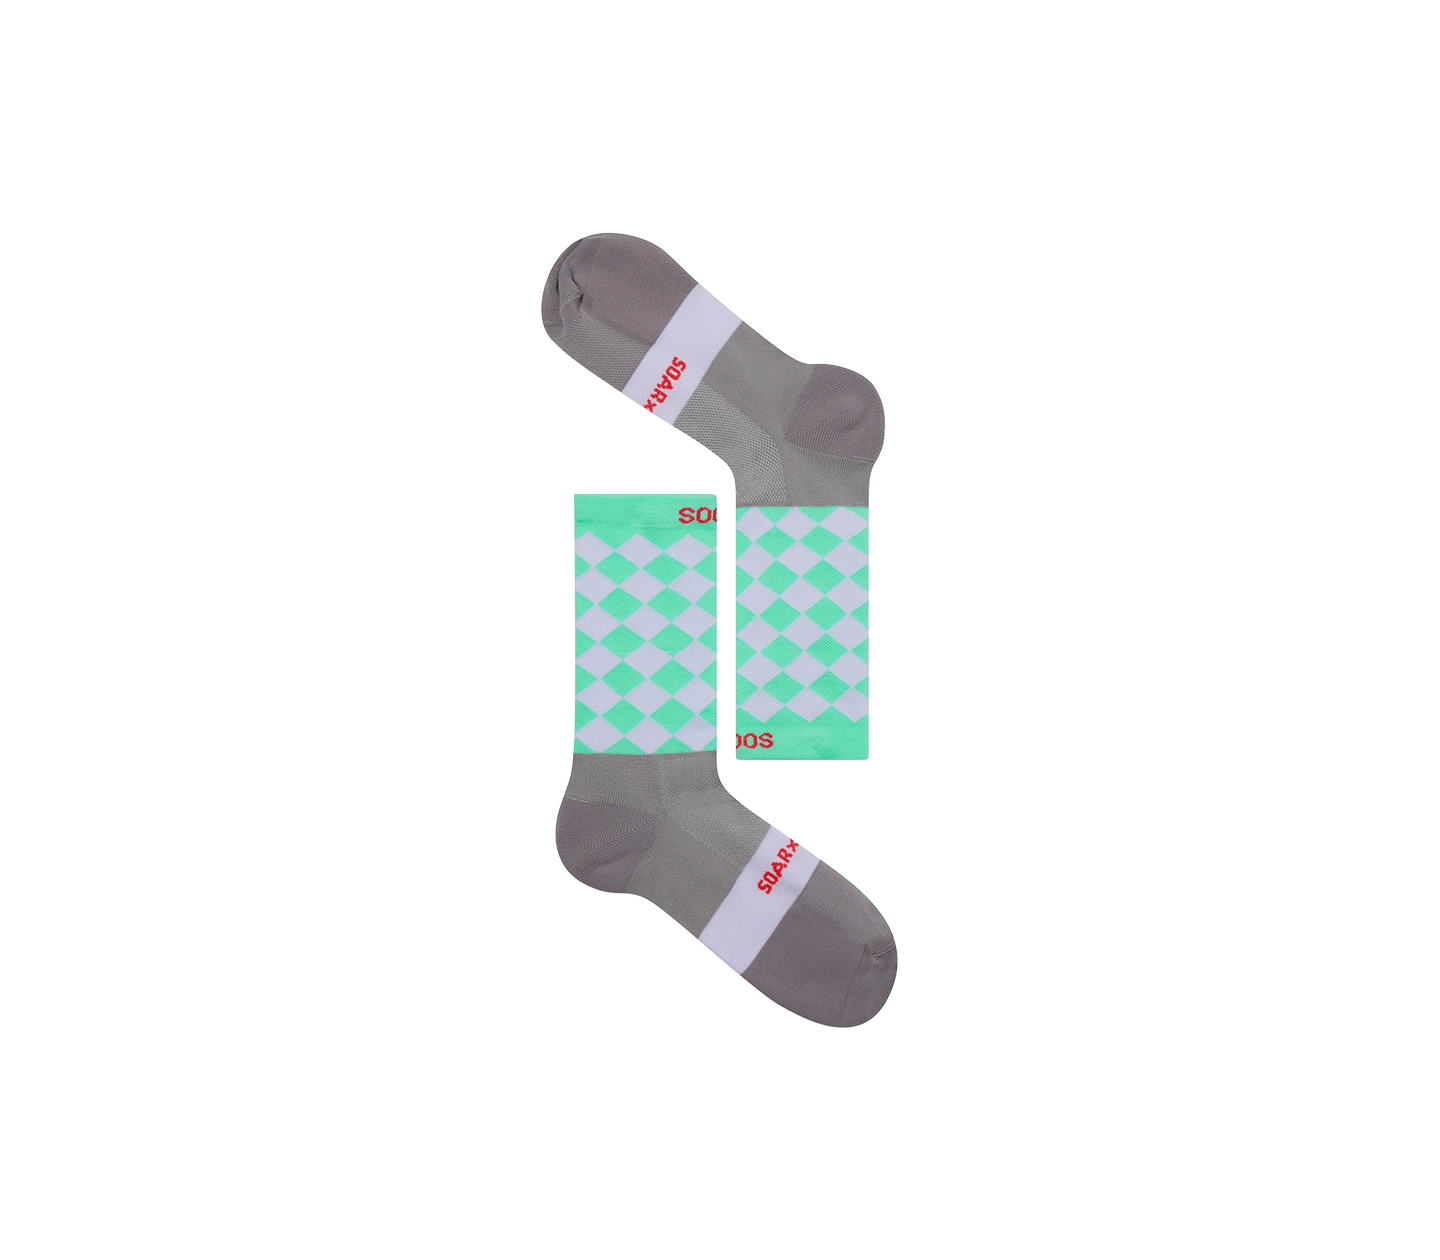 SOAR Diamond Crew Sock - Grey/Lilac